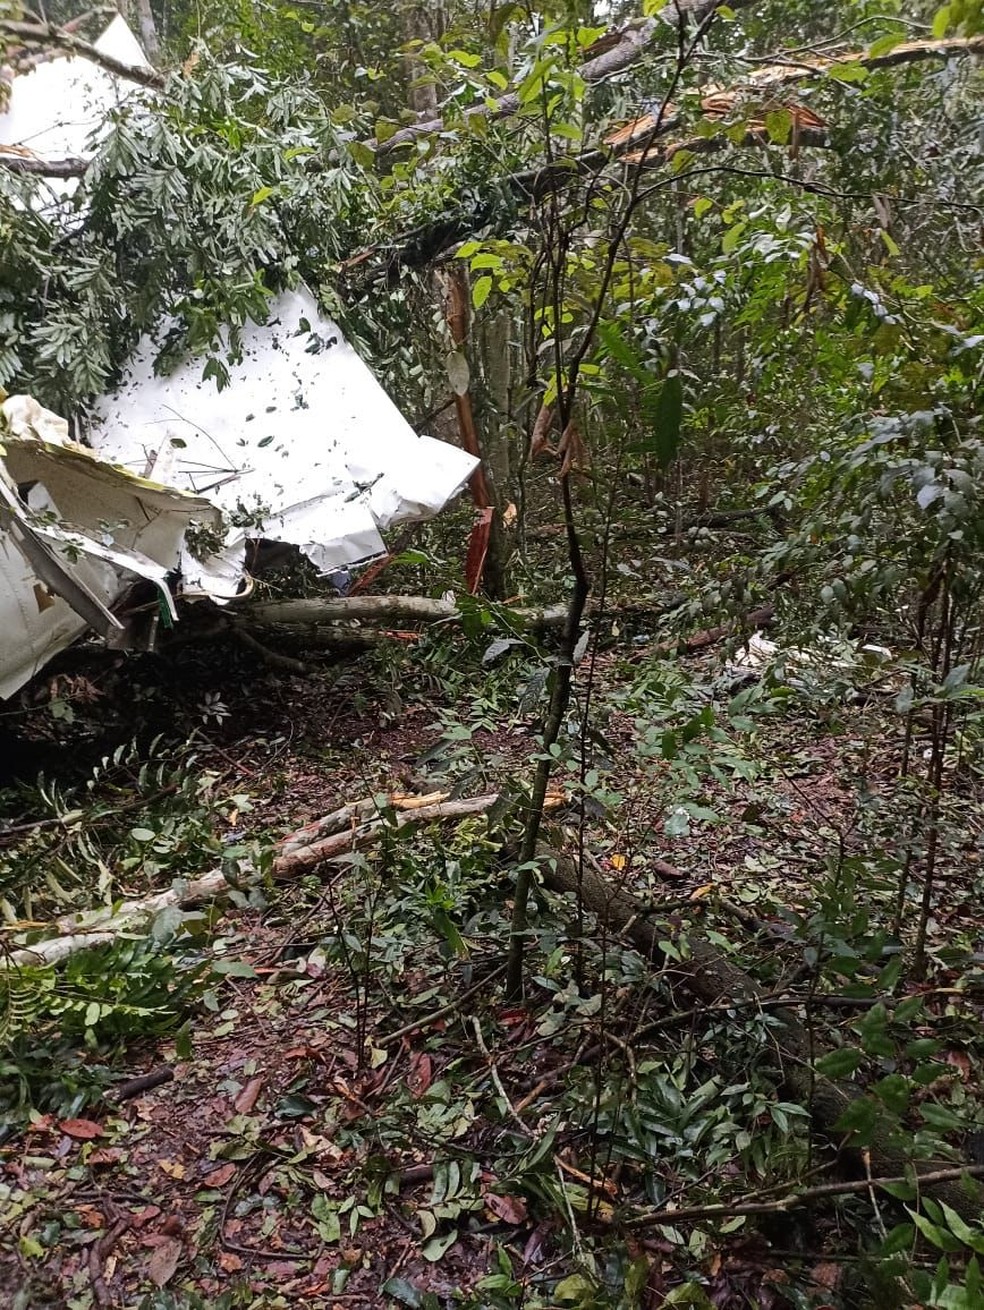 Avião caiu em região de mata em MT — Foto: Divulgação